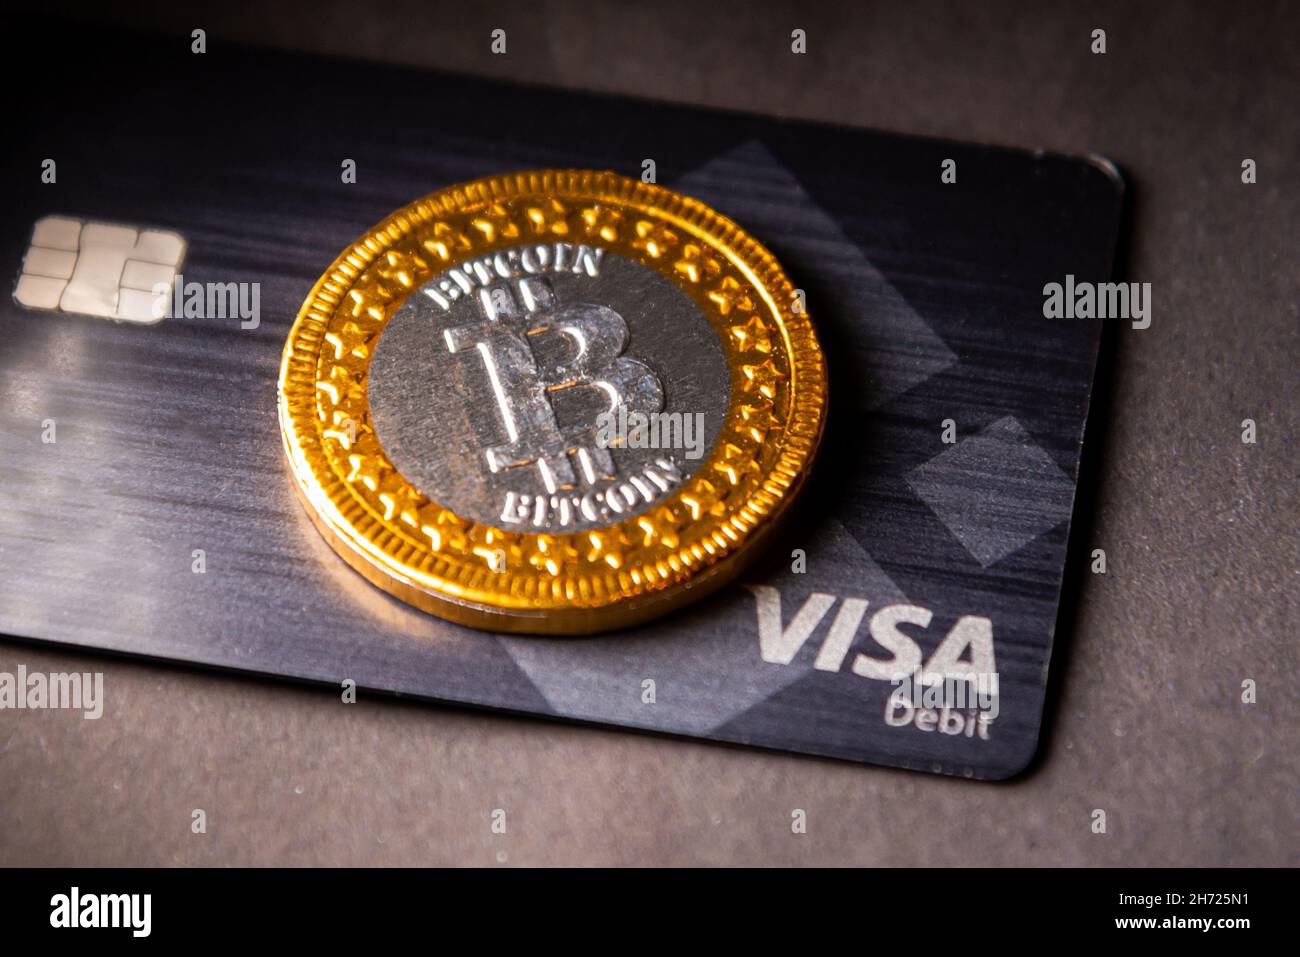 crypto-monnaie bitcoin avec carte de crédit Visa.Visa - Société  multinationale américaine fournissant des services de paiement.Riga,  Lettonie - novembre Photo Stock - Alamy